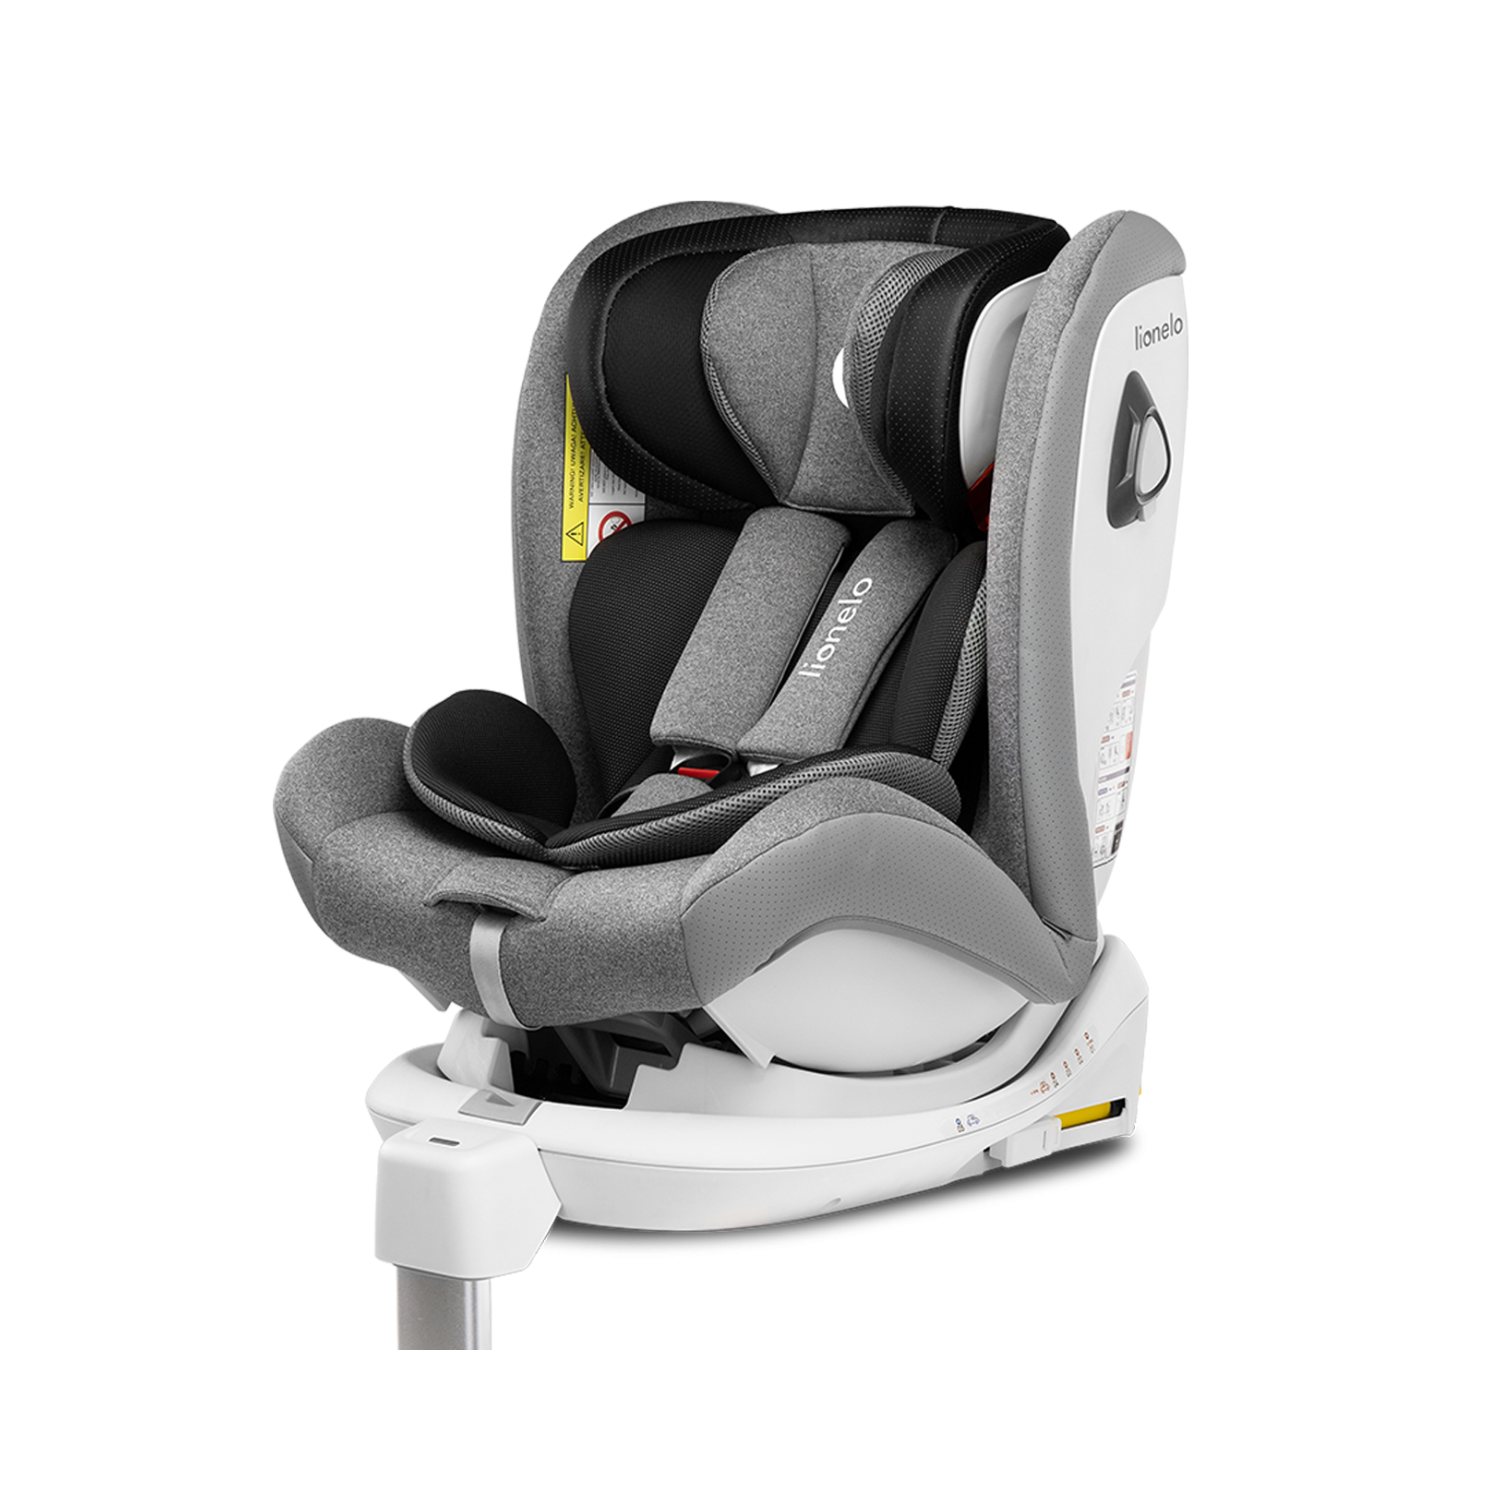 Lionelo Braam Stone — Child safety seat 0-36 kg